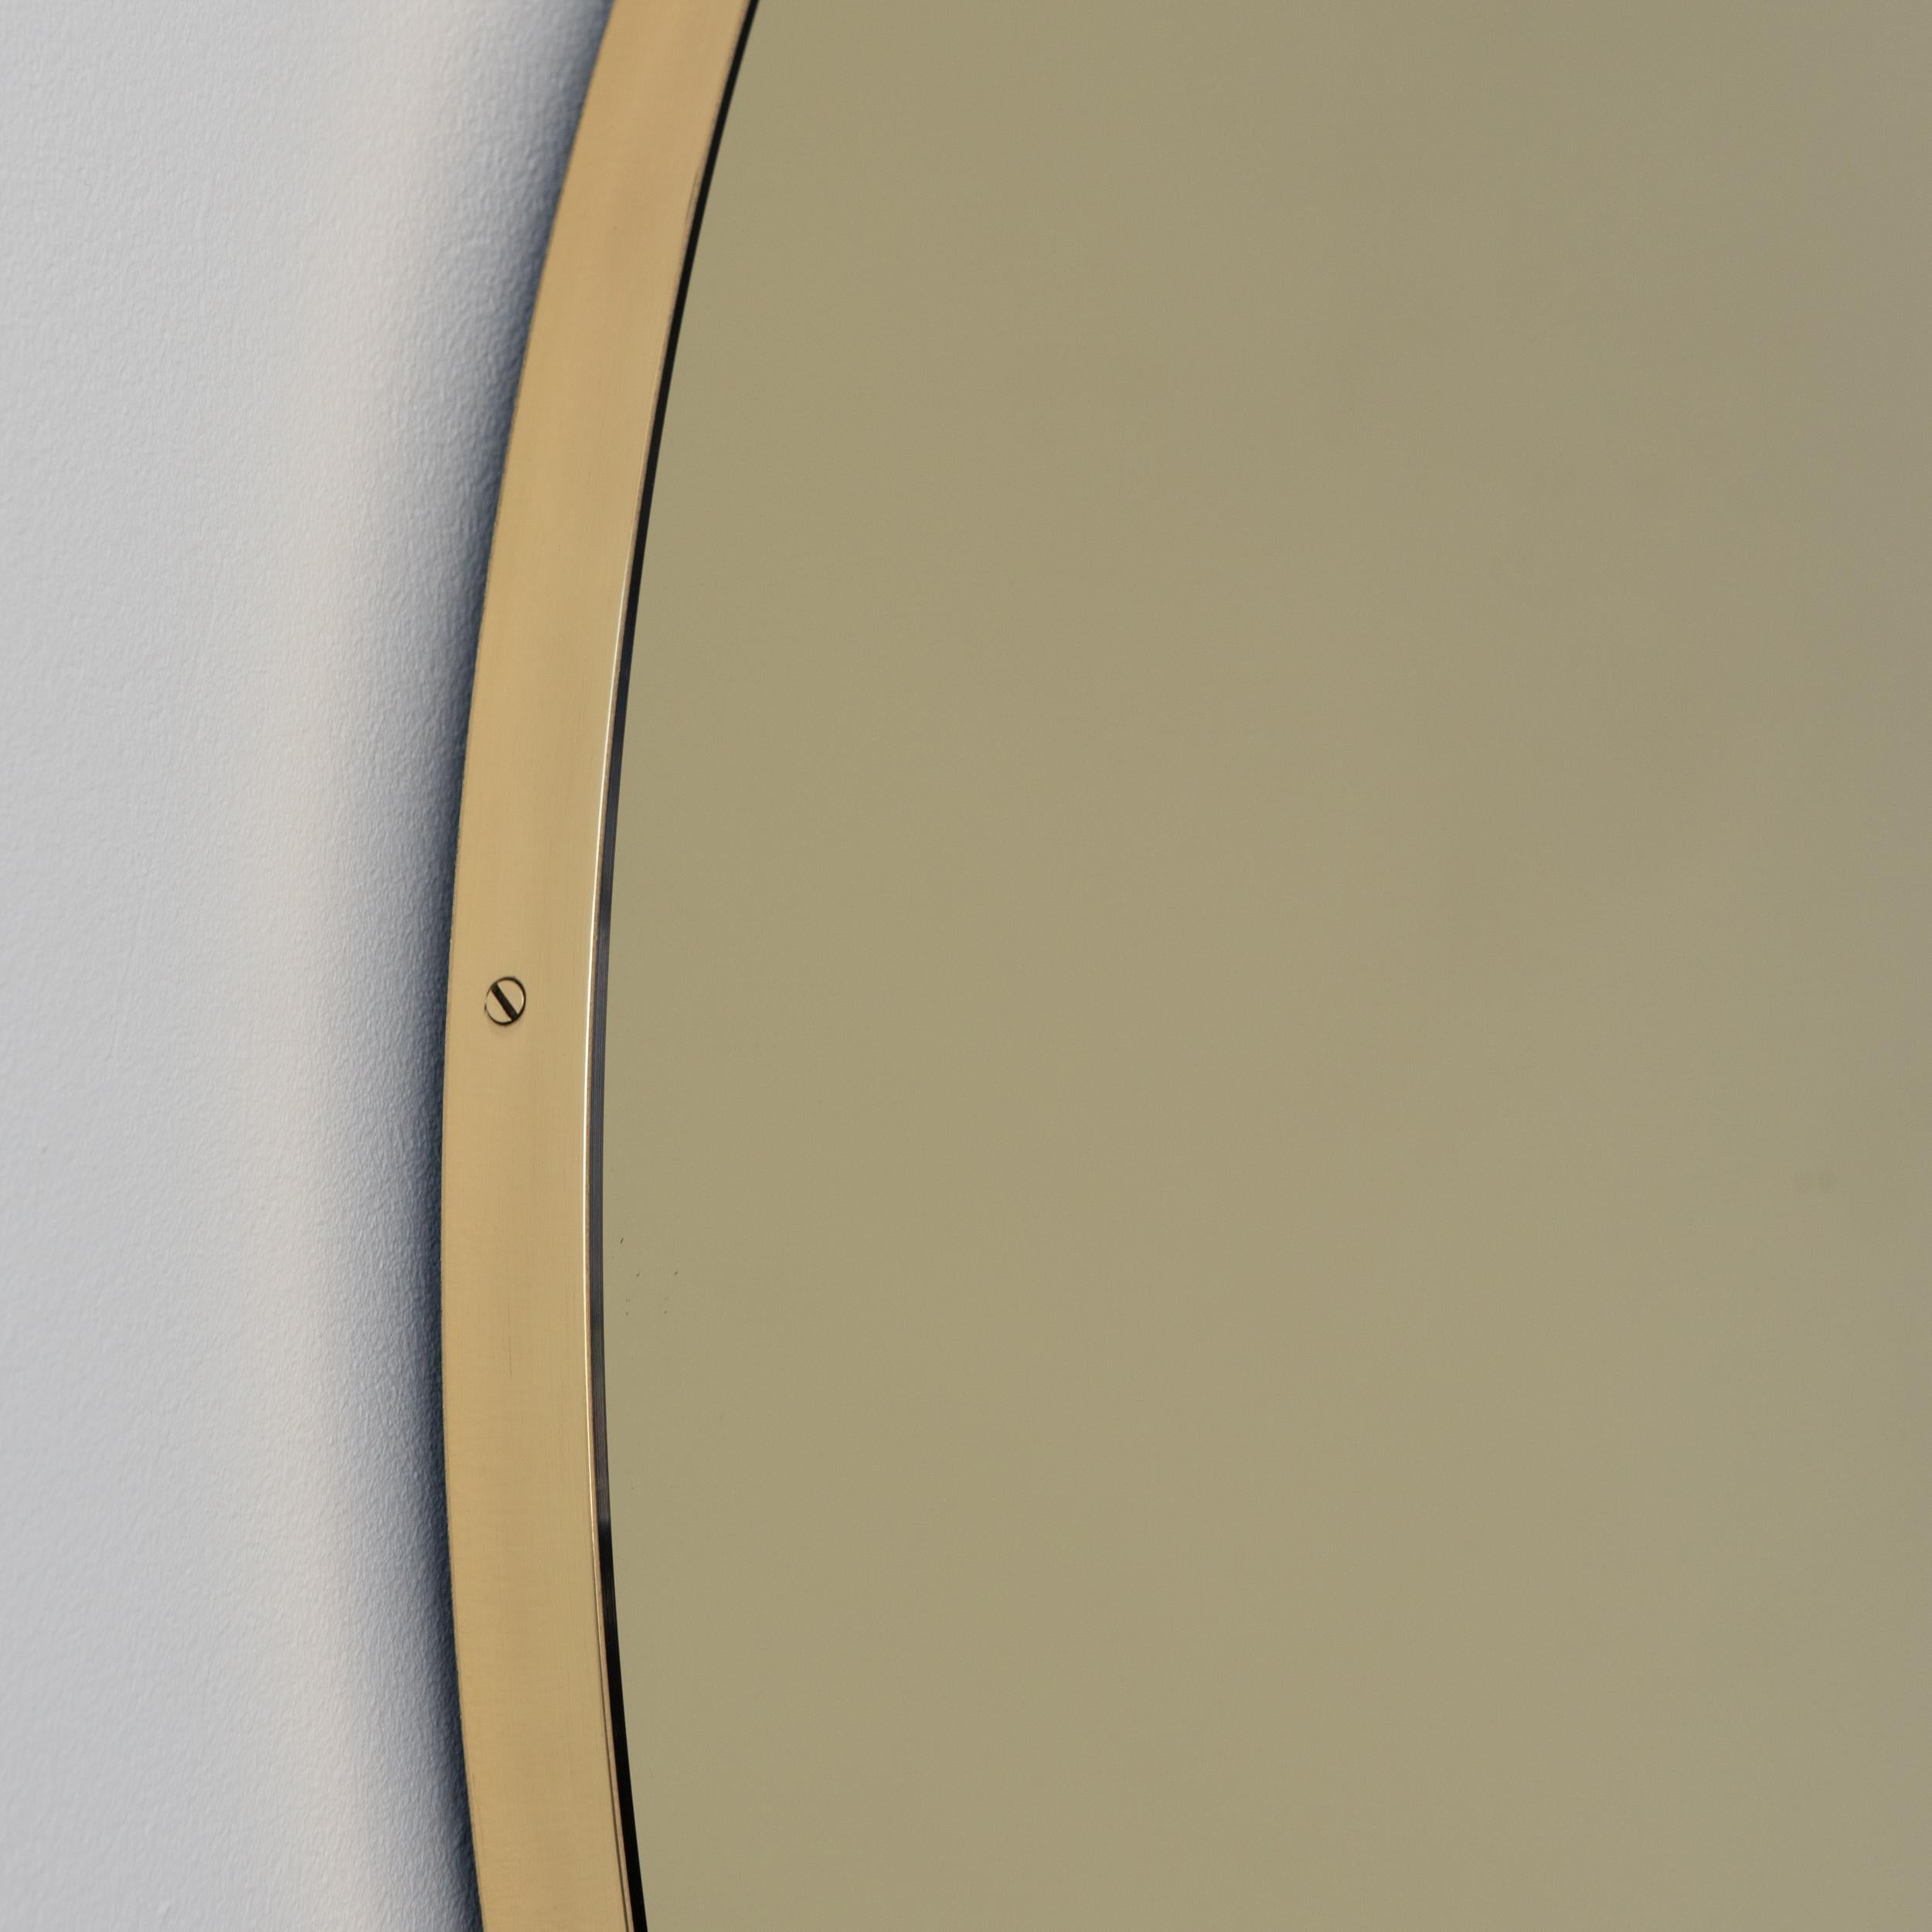 Wunderschöner runder Spiegel in Goldtönen mit einem eleganten, schlanken Rahmen aus gebürstetem Messing. Entworfen und handgefertigt in London, UK.

Die Details und die Verarbeitung, einschließlich der sichtbaren Messingschrauben, unterstreichen